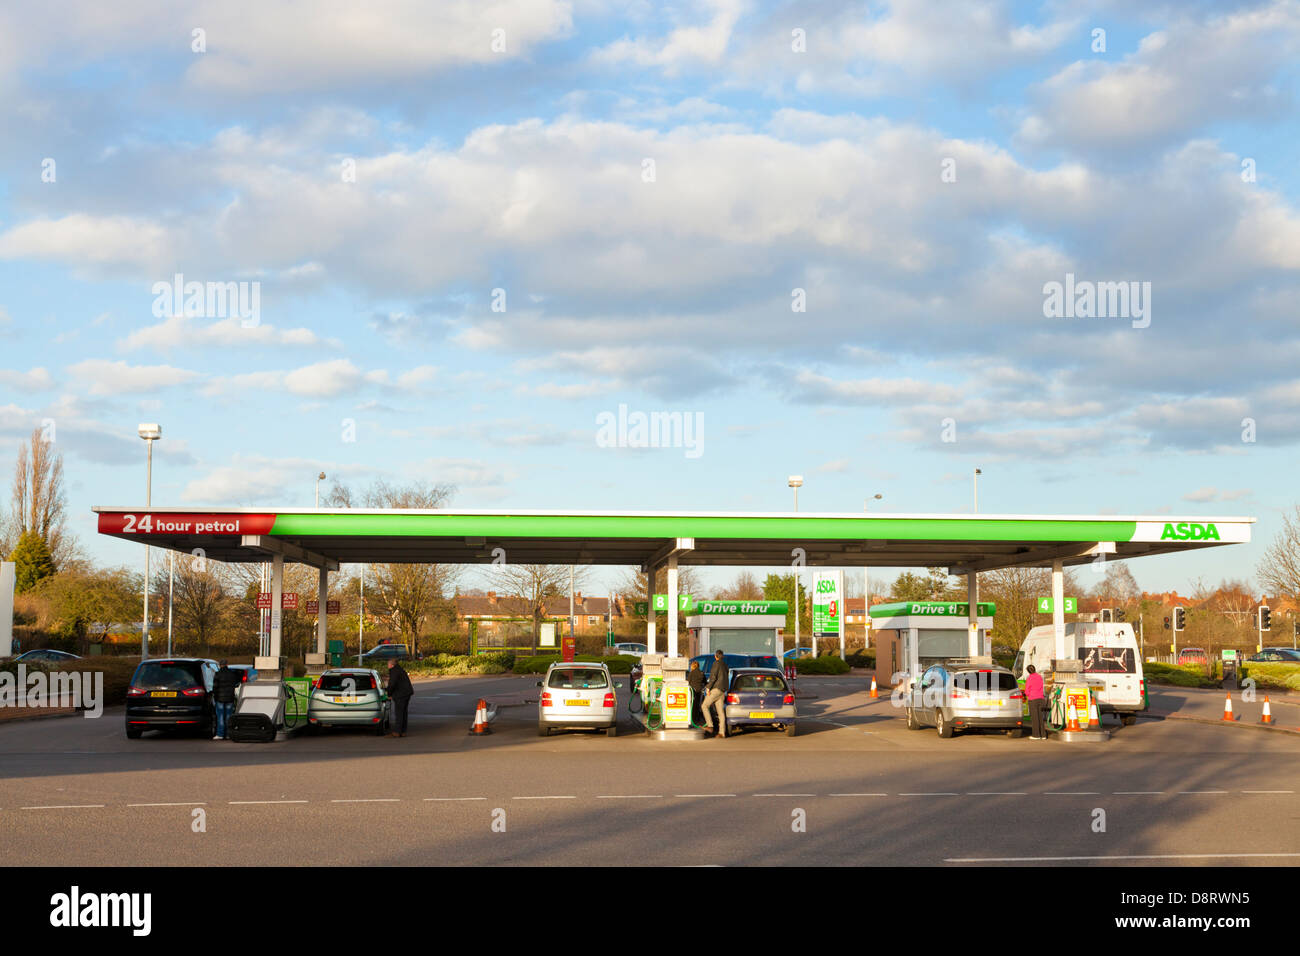 ASDA petrol station, West Bridgford, Nottinghamshire, England, UK Stock Photo